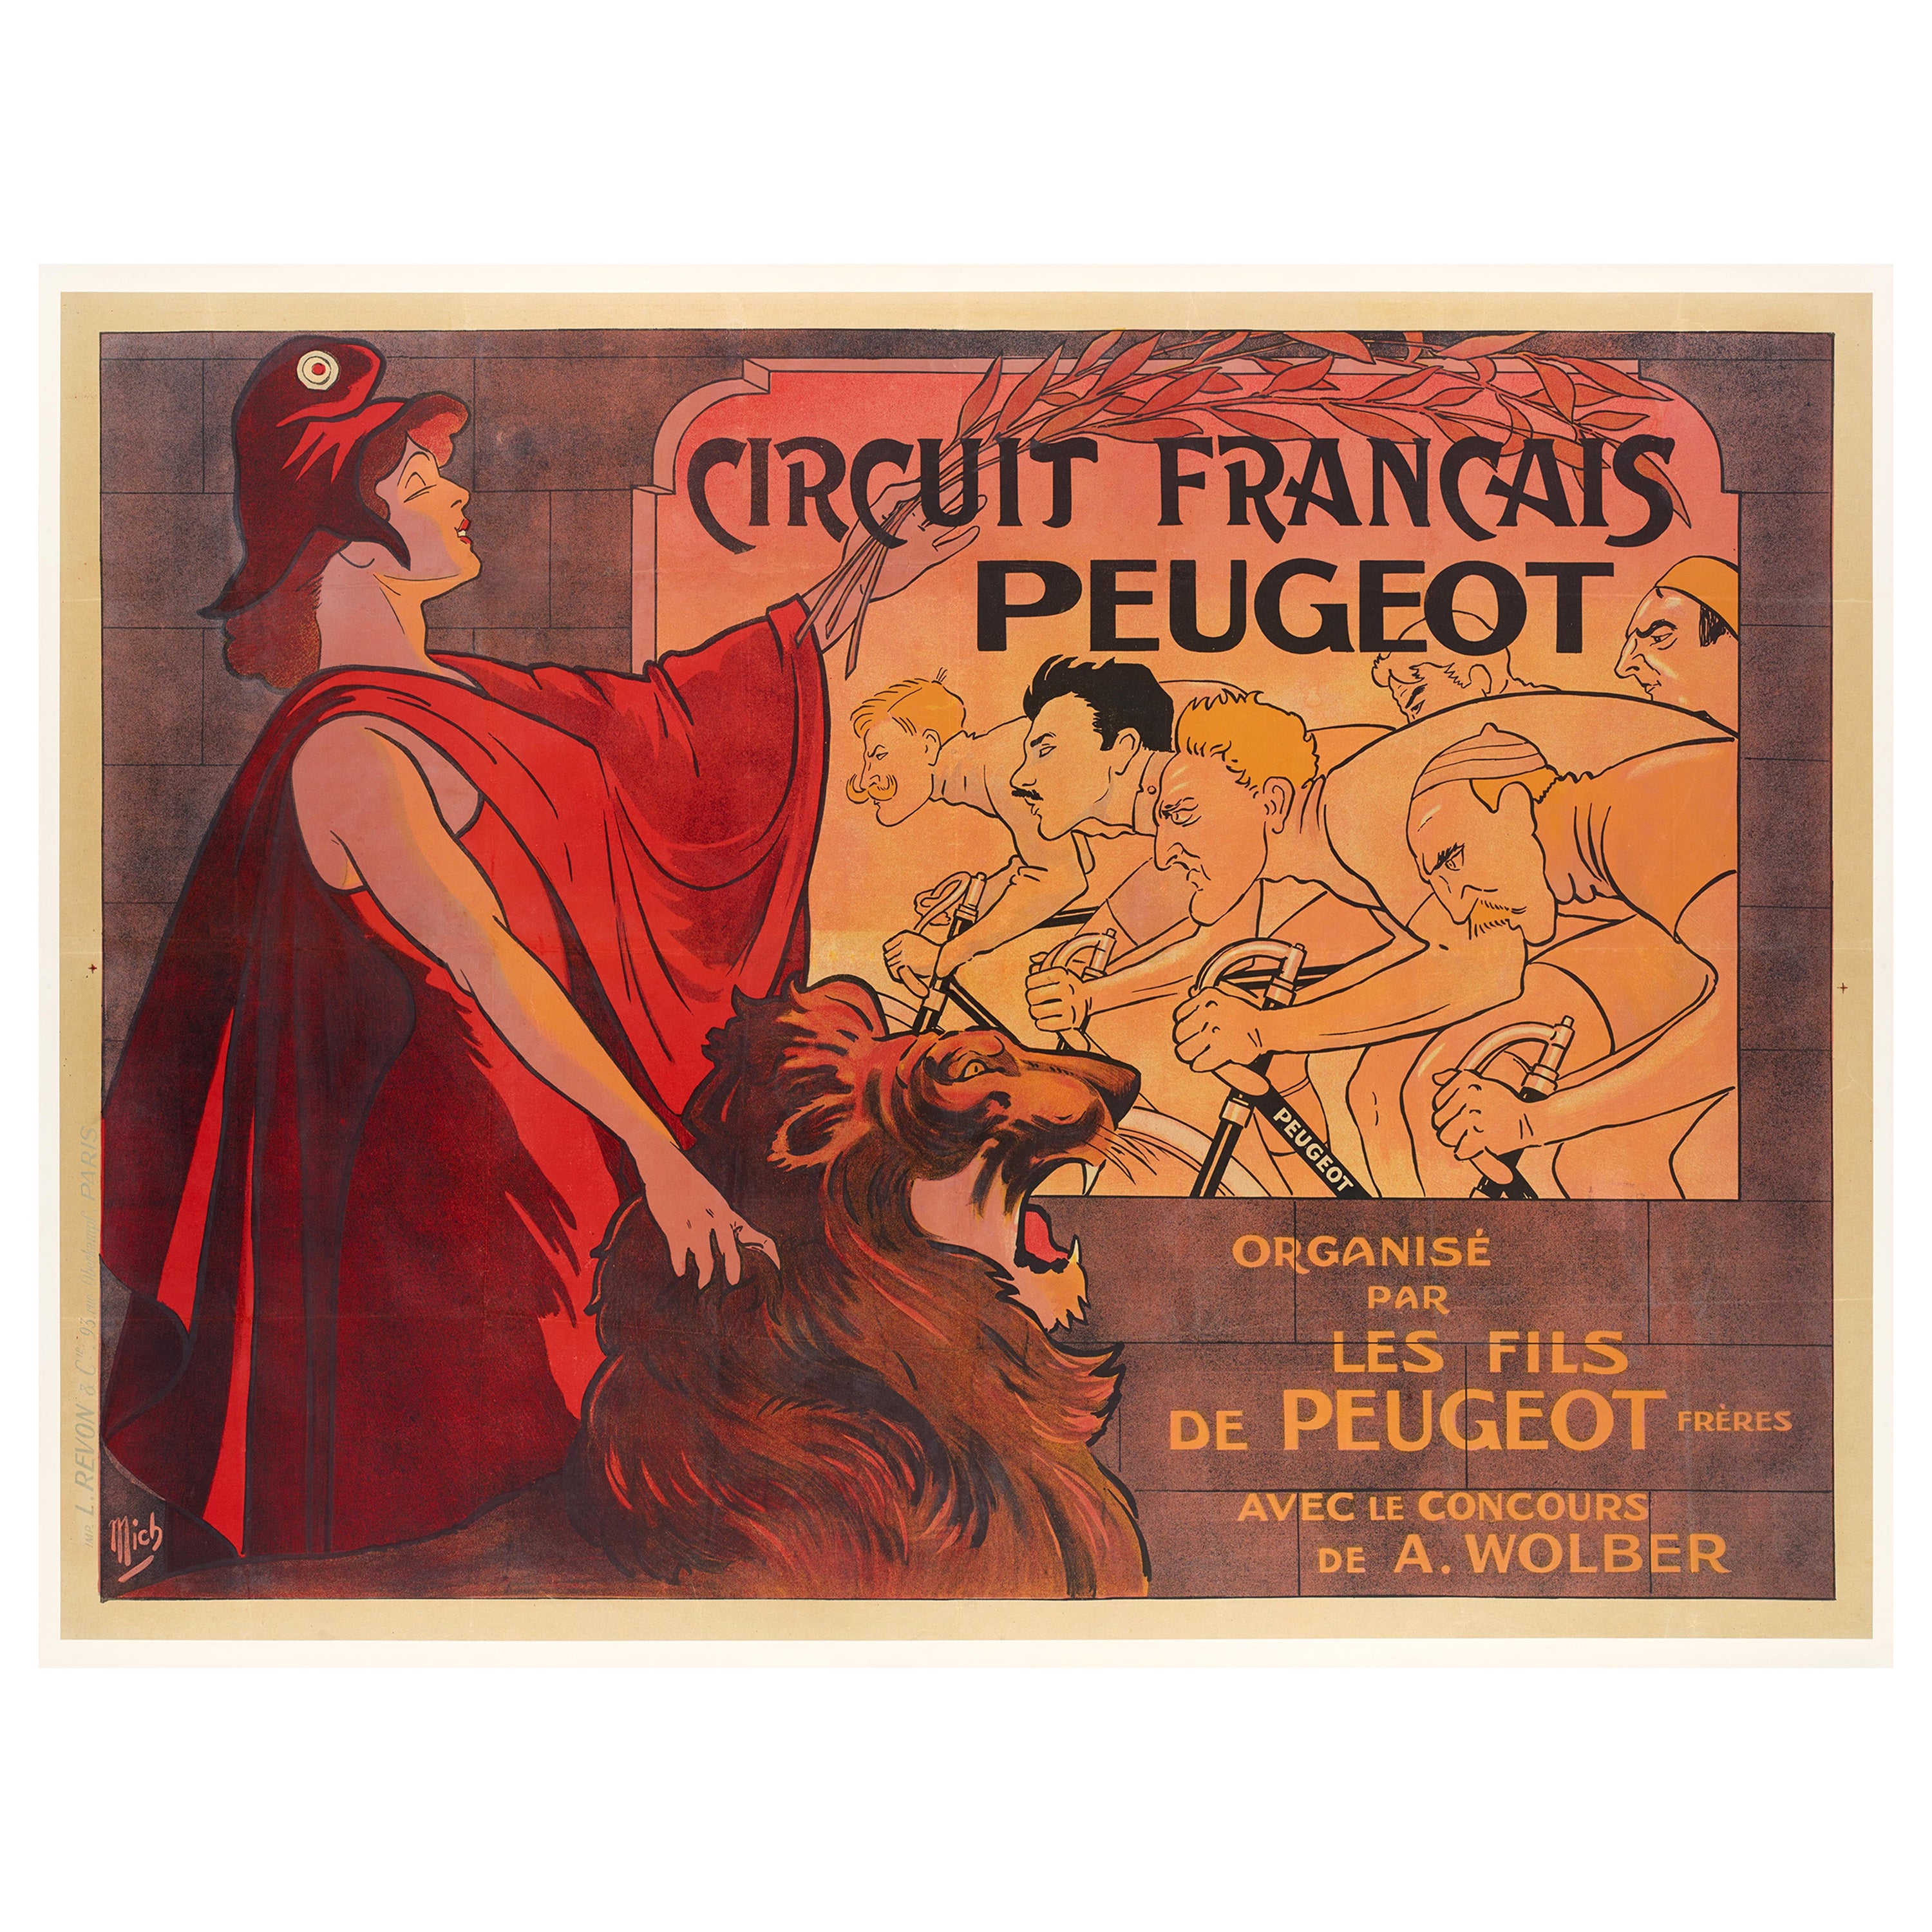 Affiche vintage d'origine Mich, Circuit Francais Peugeot, course de vélo, lion, 1911